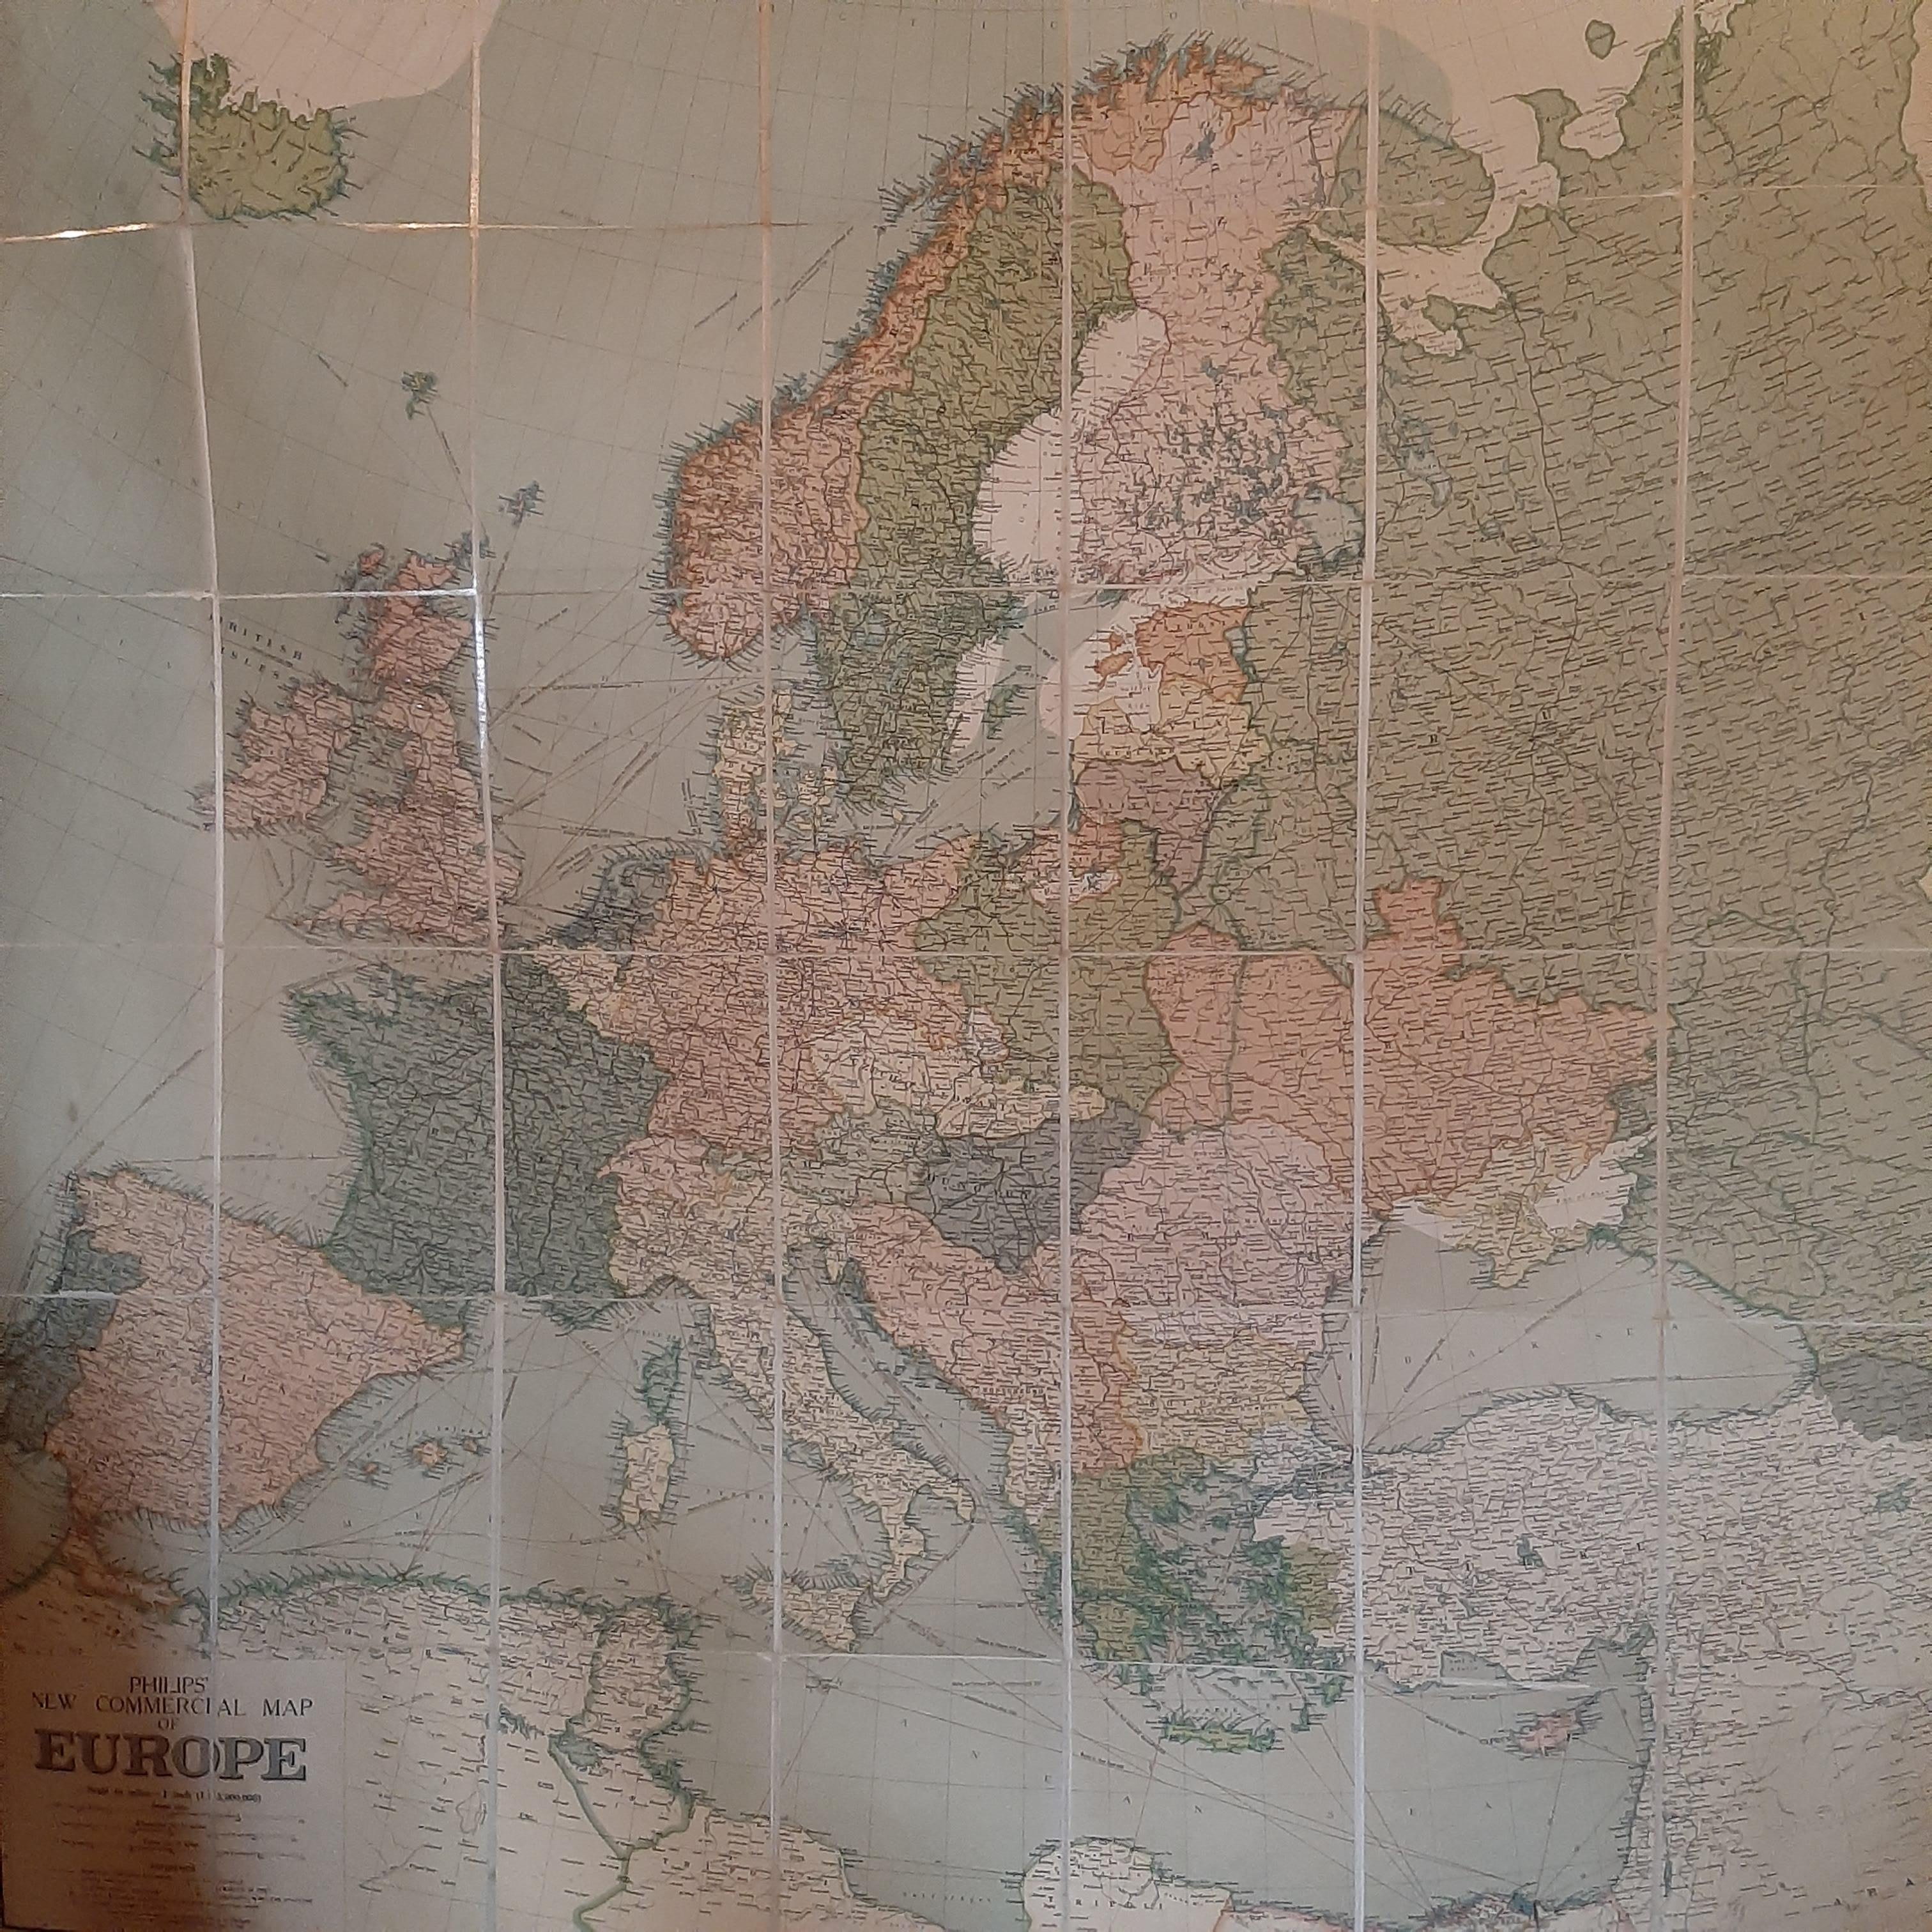 Antike Karte mit dem Titel 'Philips' New Commercial Map of Europe'. Sehr große Wandkarte von Europa einschließlich der nordafrikanischen Küste und der Türkei. Dekorative Bordüren. In 48 Segmente zerlegt, auf Leinen aufgezogen und in die